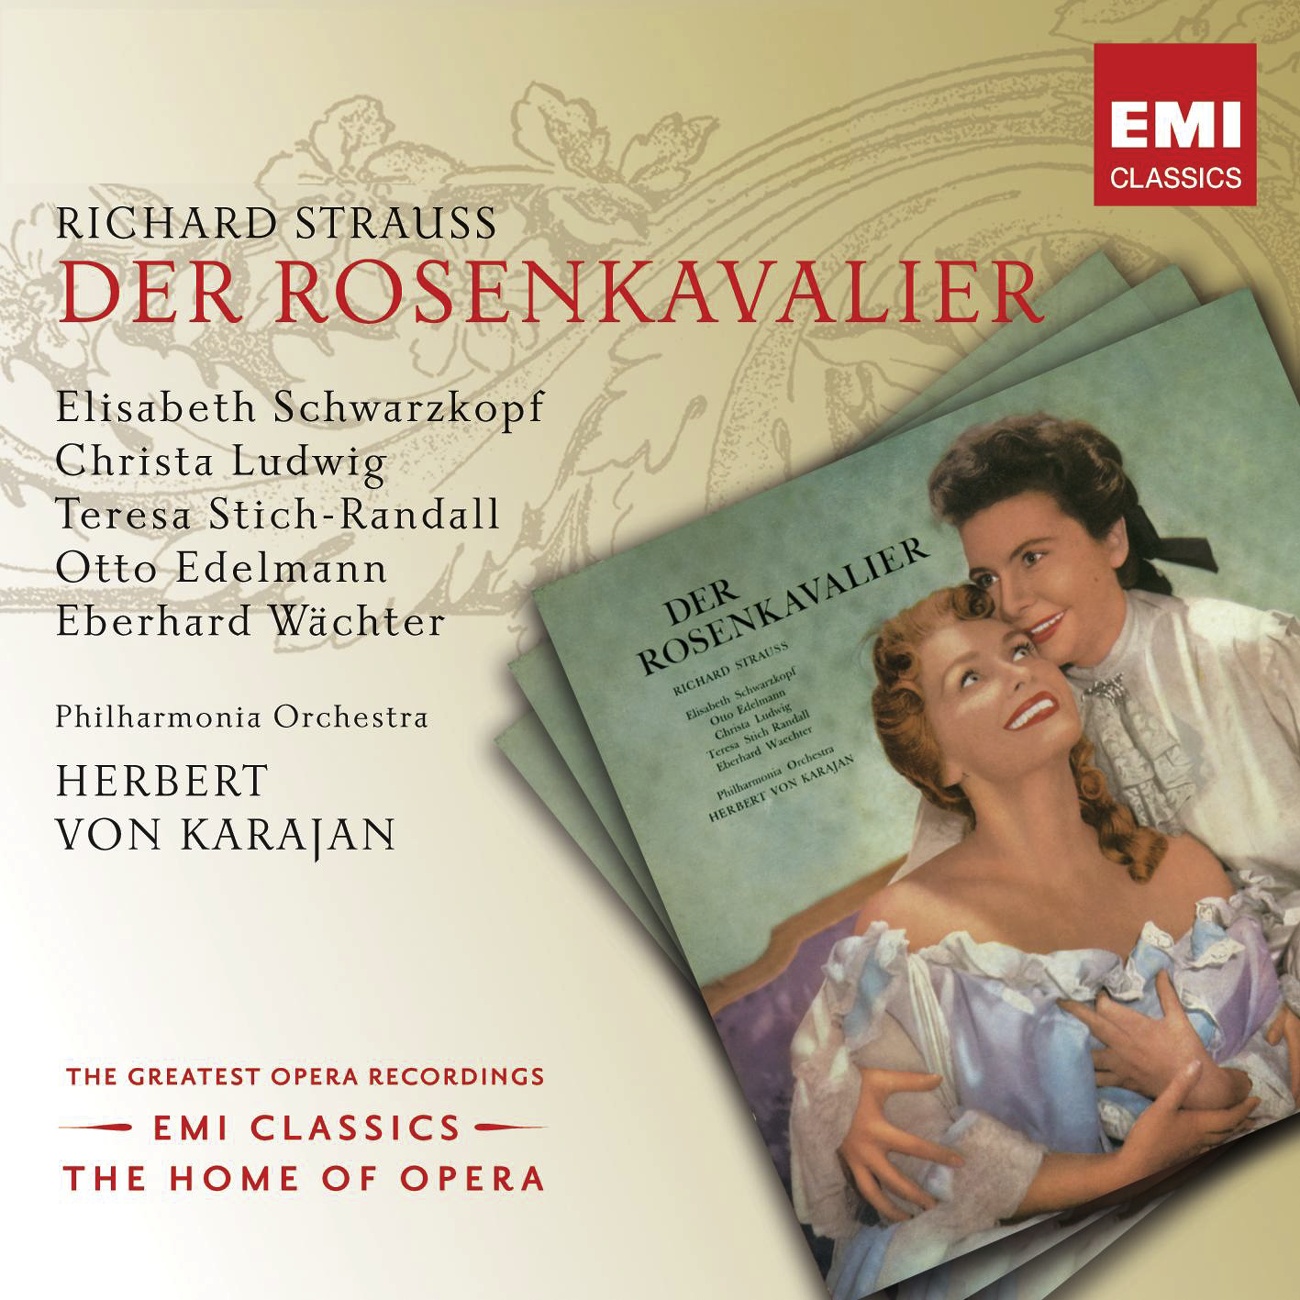 Der Rosenkavalier (2001 Digital Remaster), Act II: Ohne mich, ohne mich jeder Tag dir zu bang (Ochs/Annina)